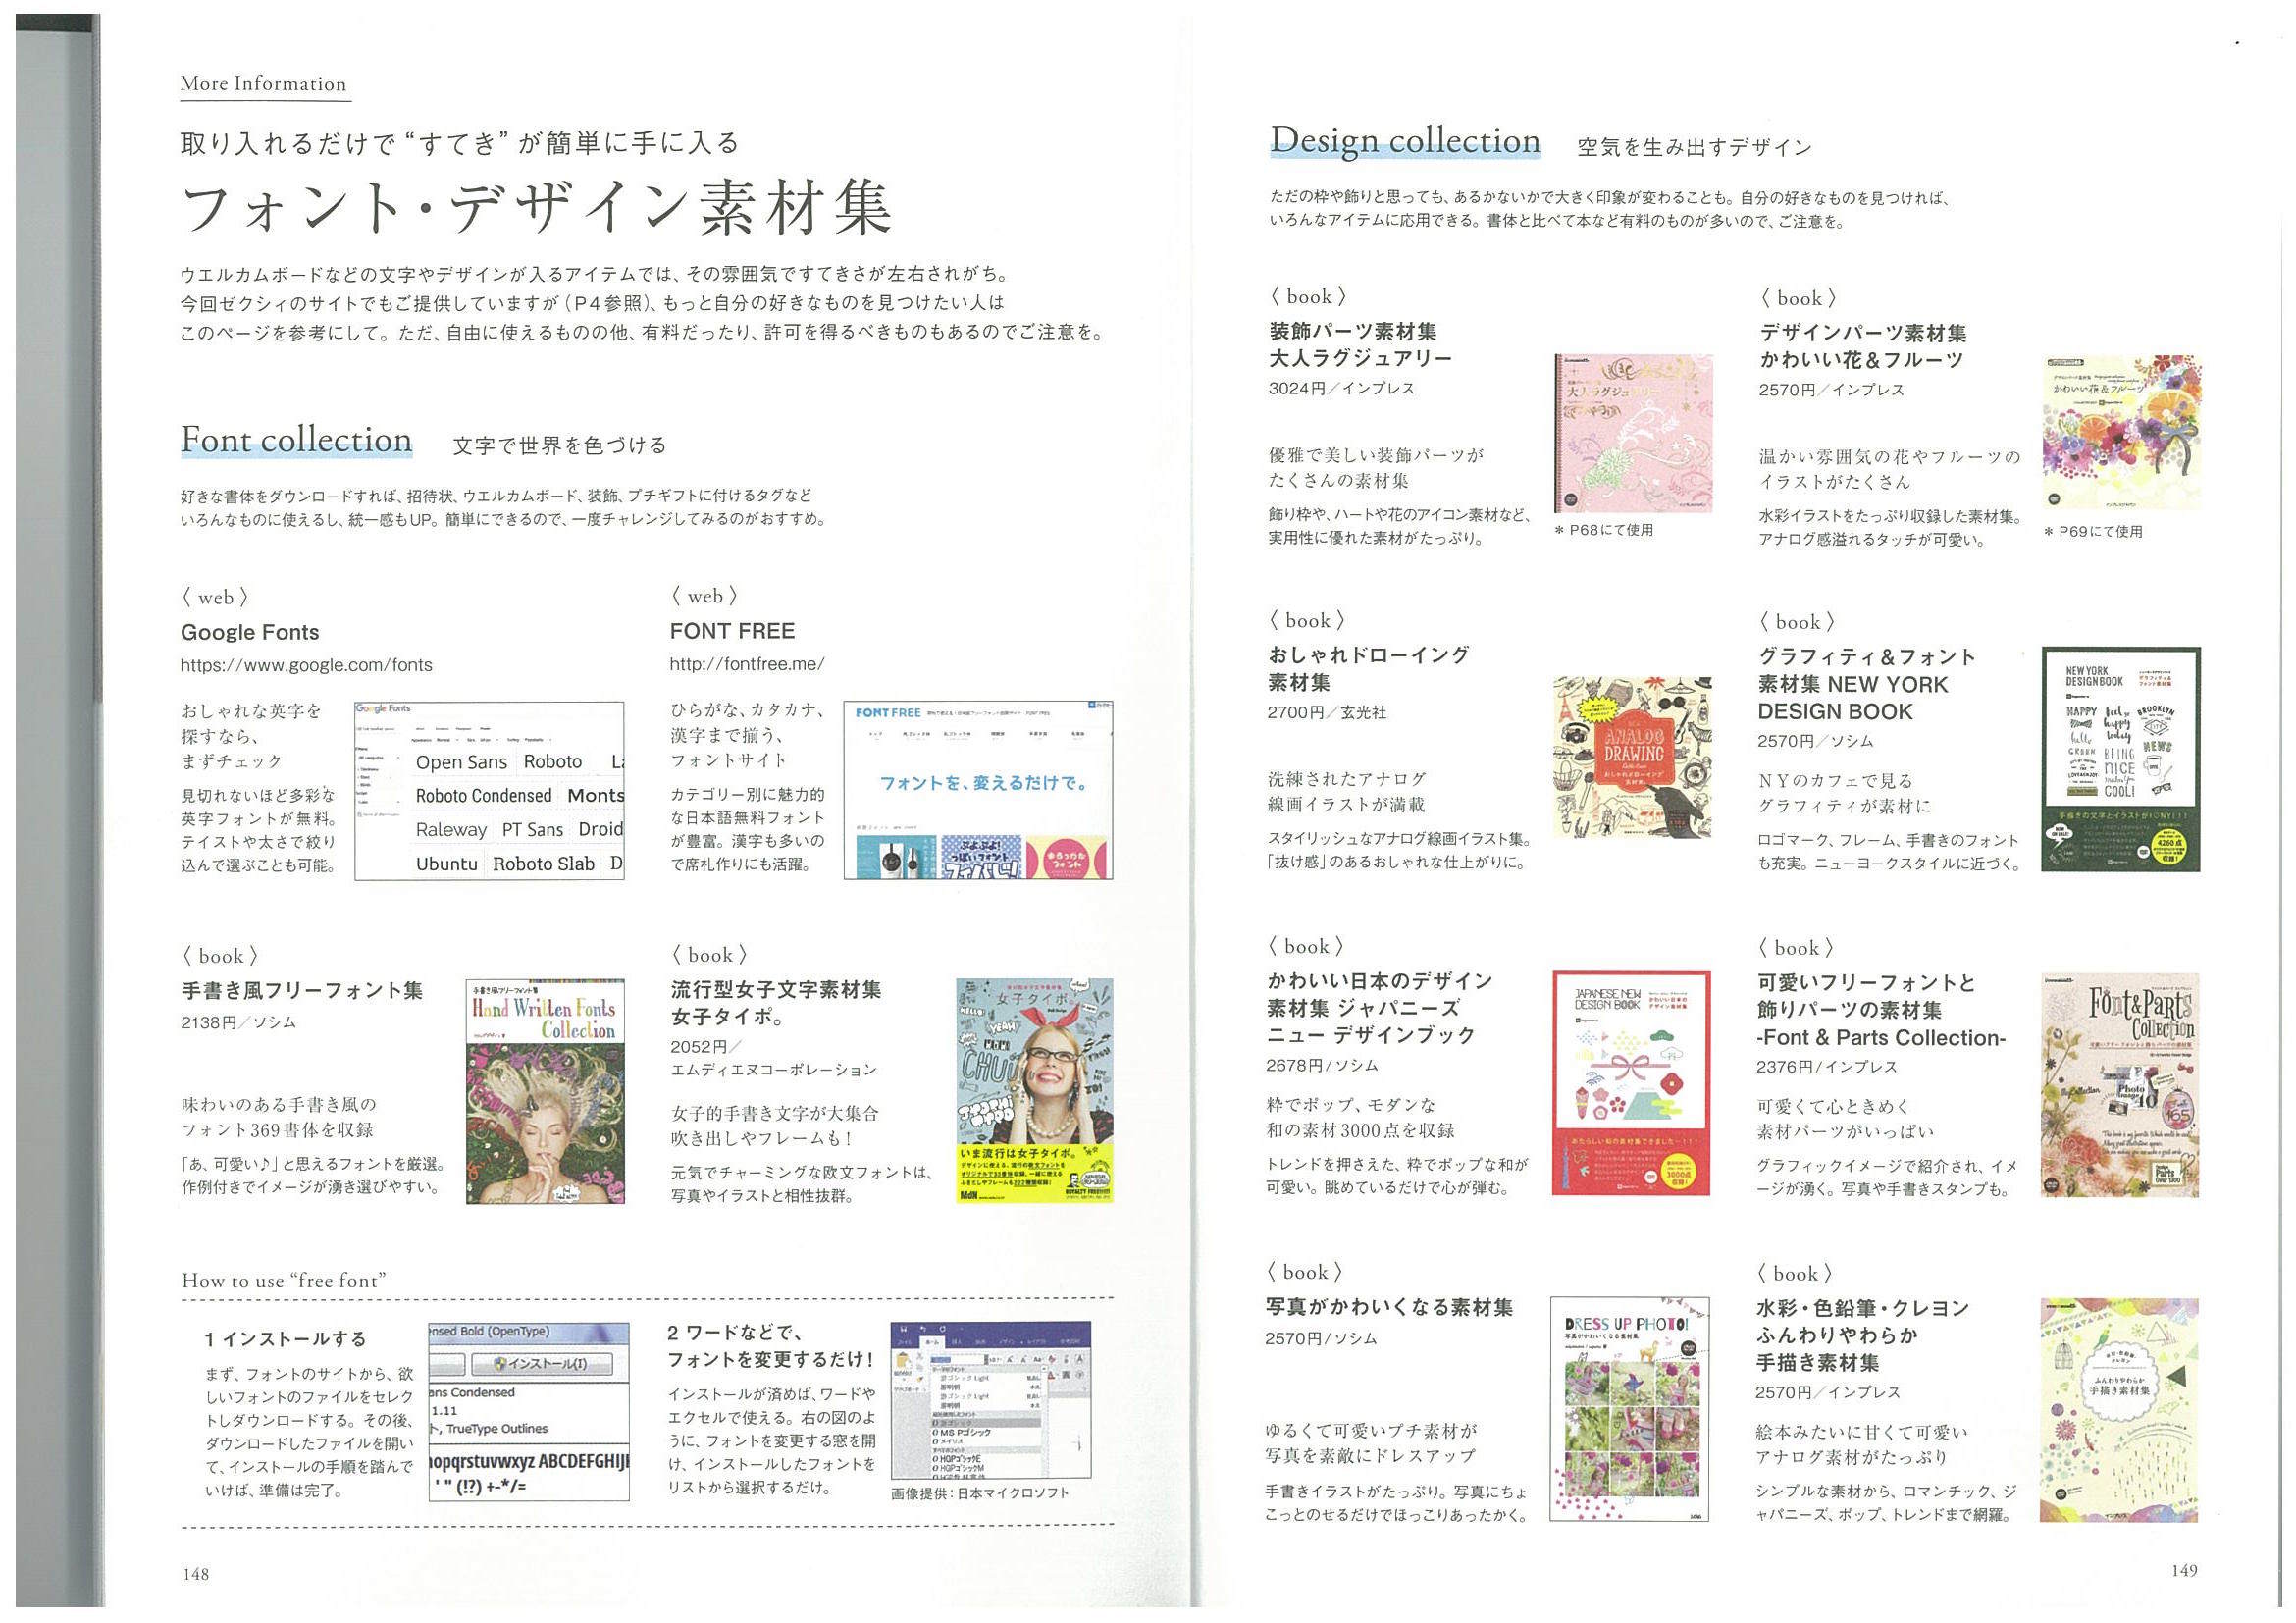 高級感 かわいい日本のデザイン素材集 ジャパニーズニューデザインブック 売れ筋 Westjordandentistutah Com